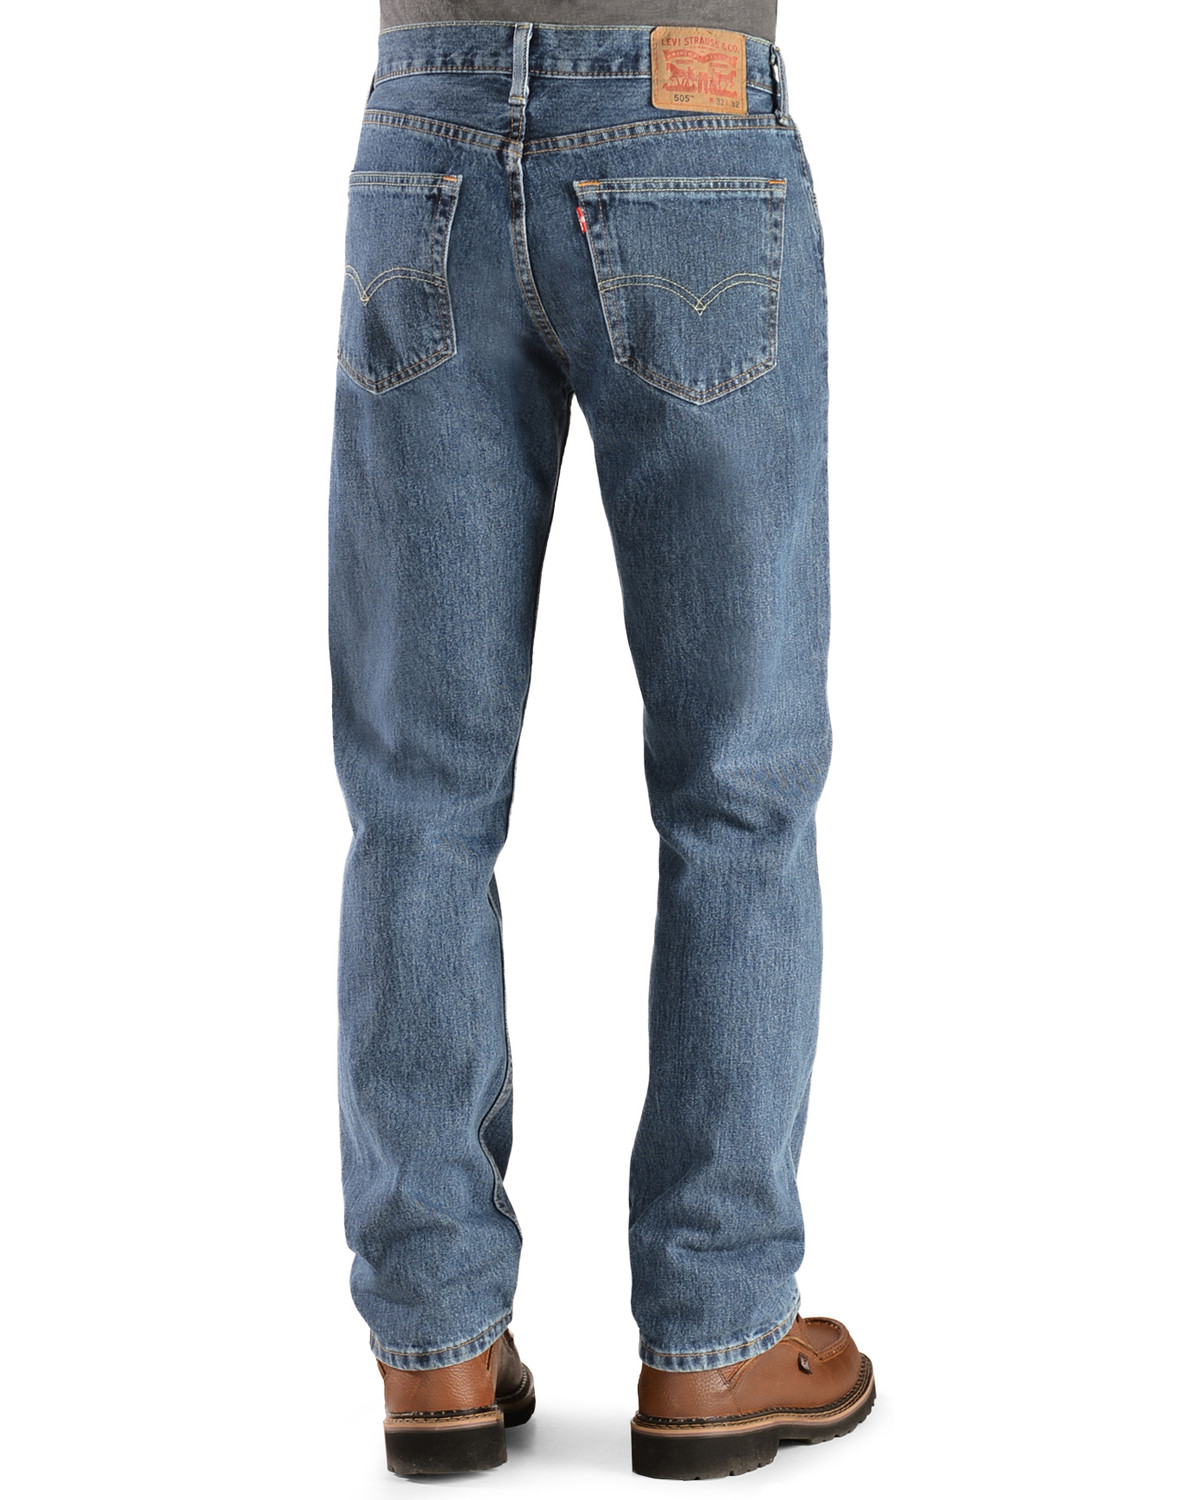 505 levis jeans mens